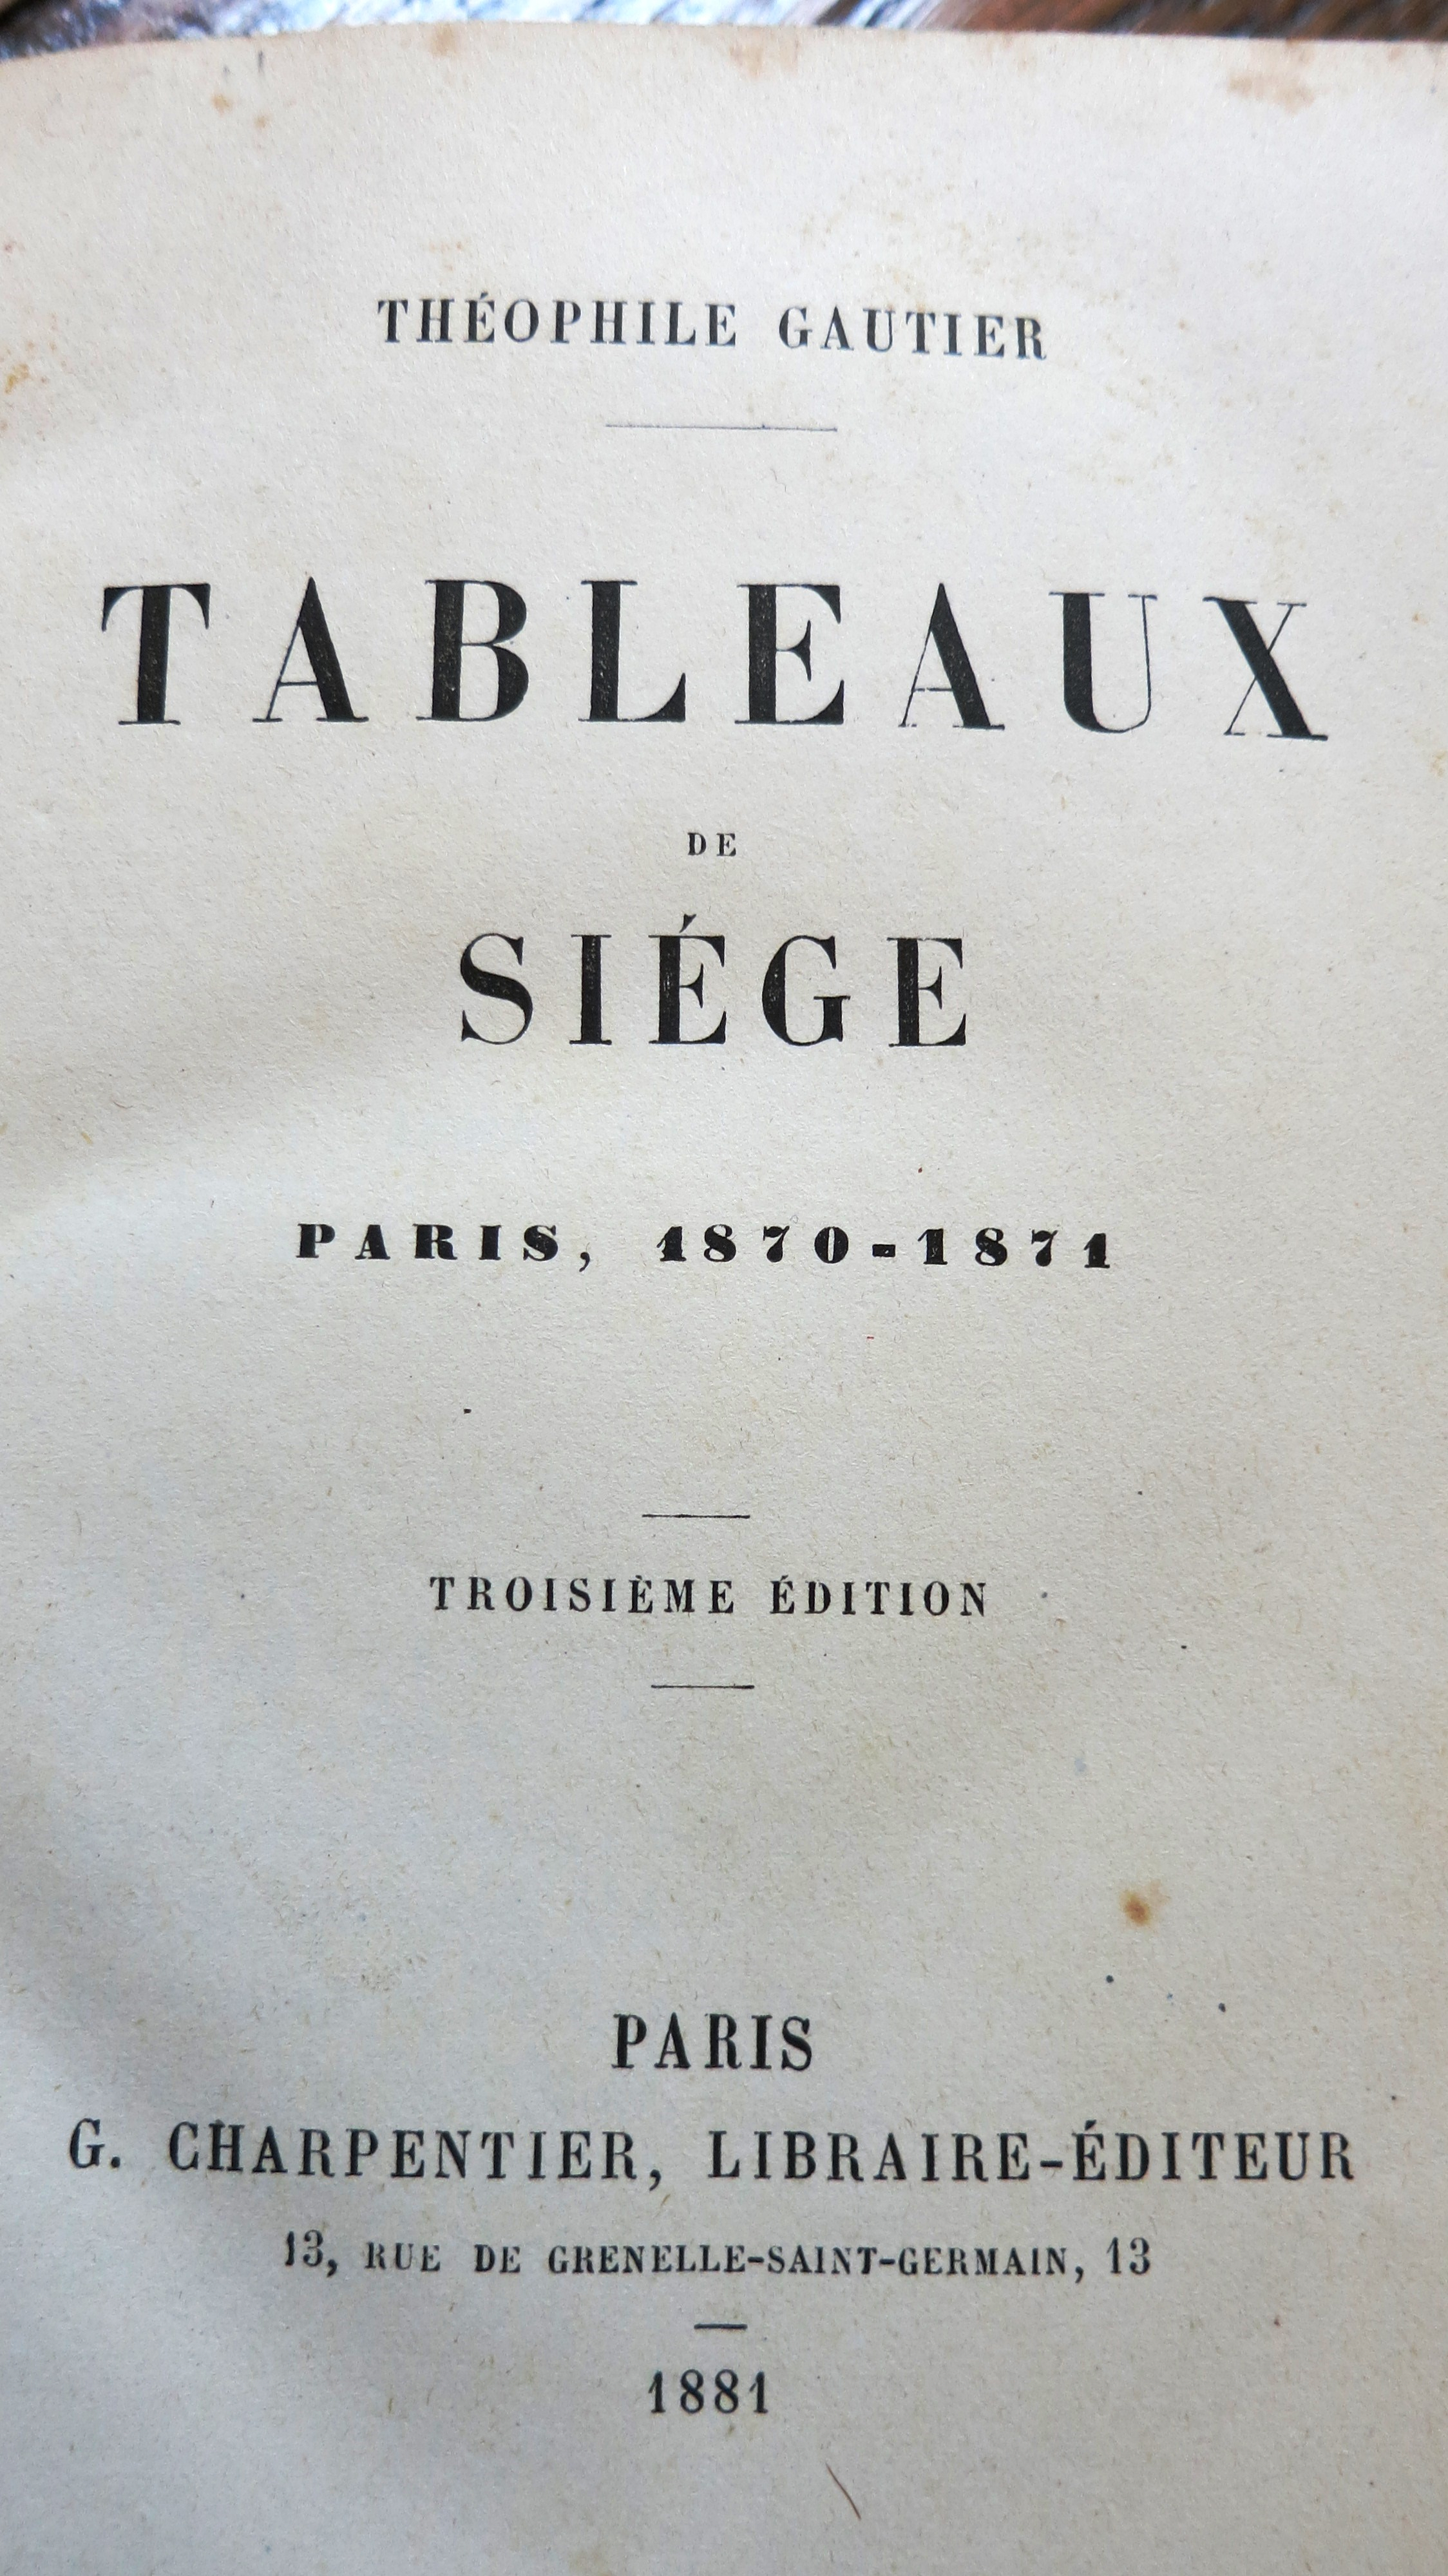 Tableaux de Siège Paris 1870-1871